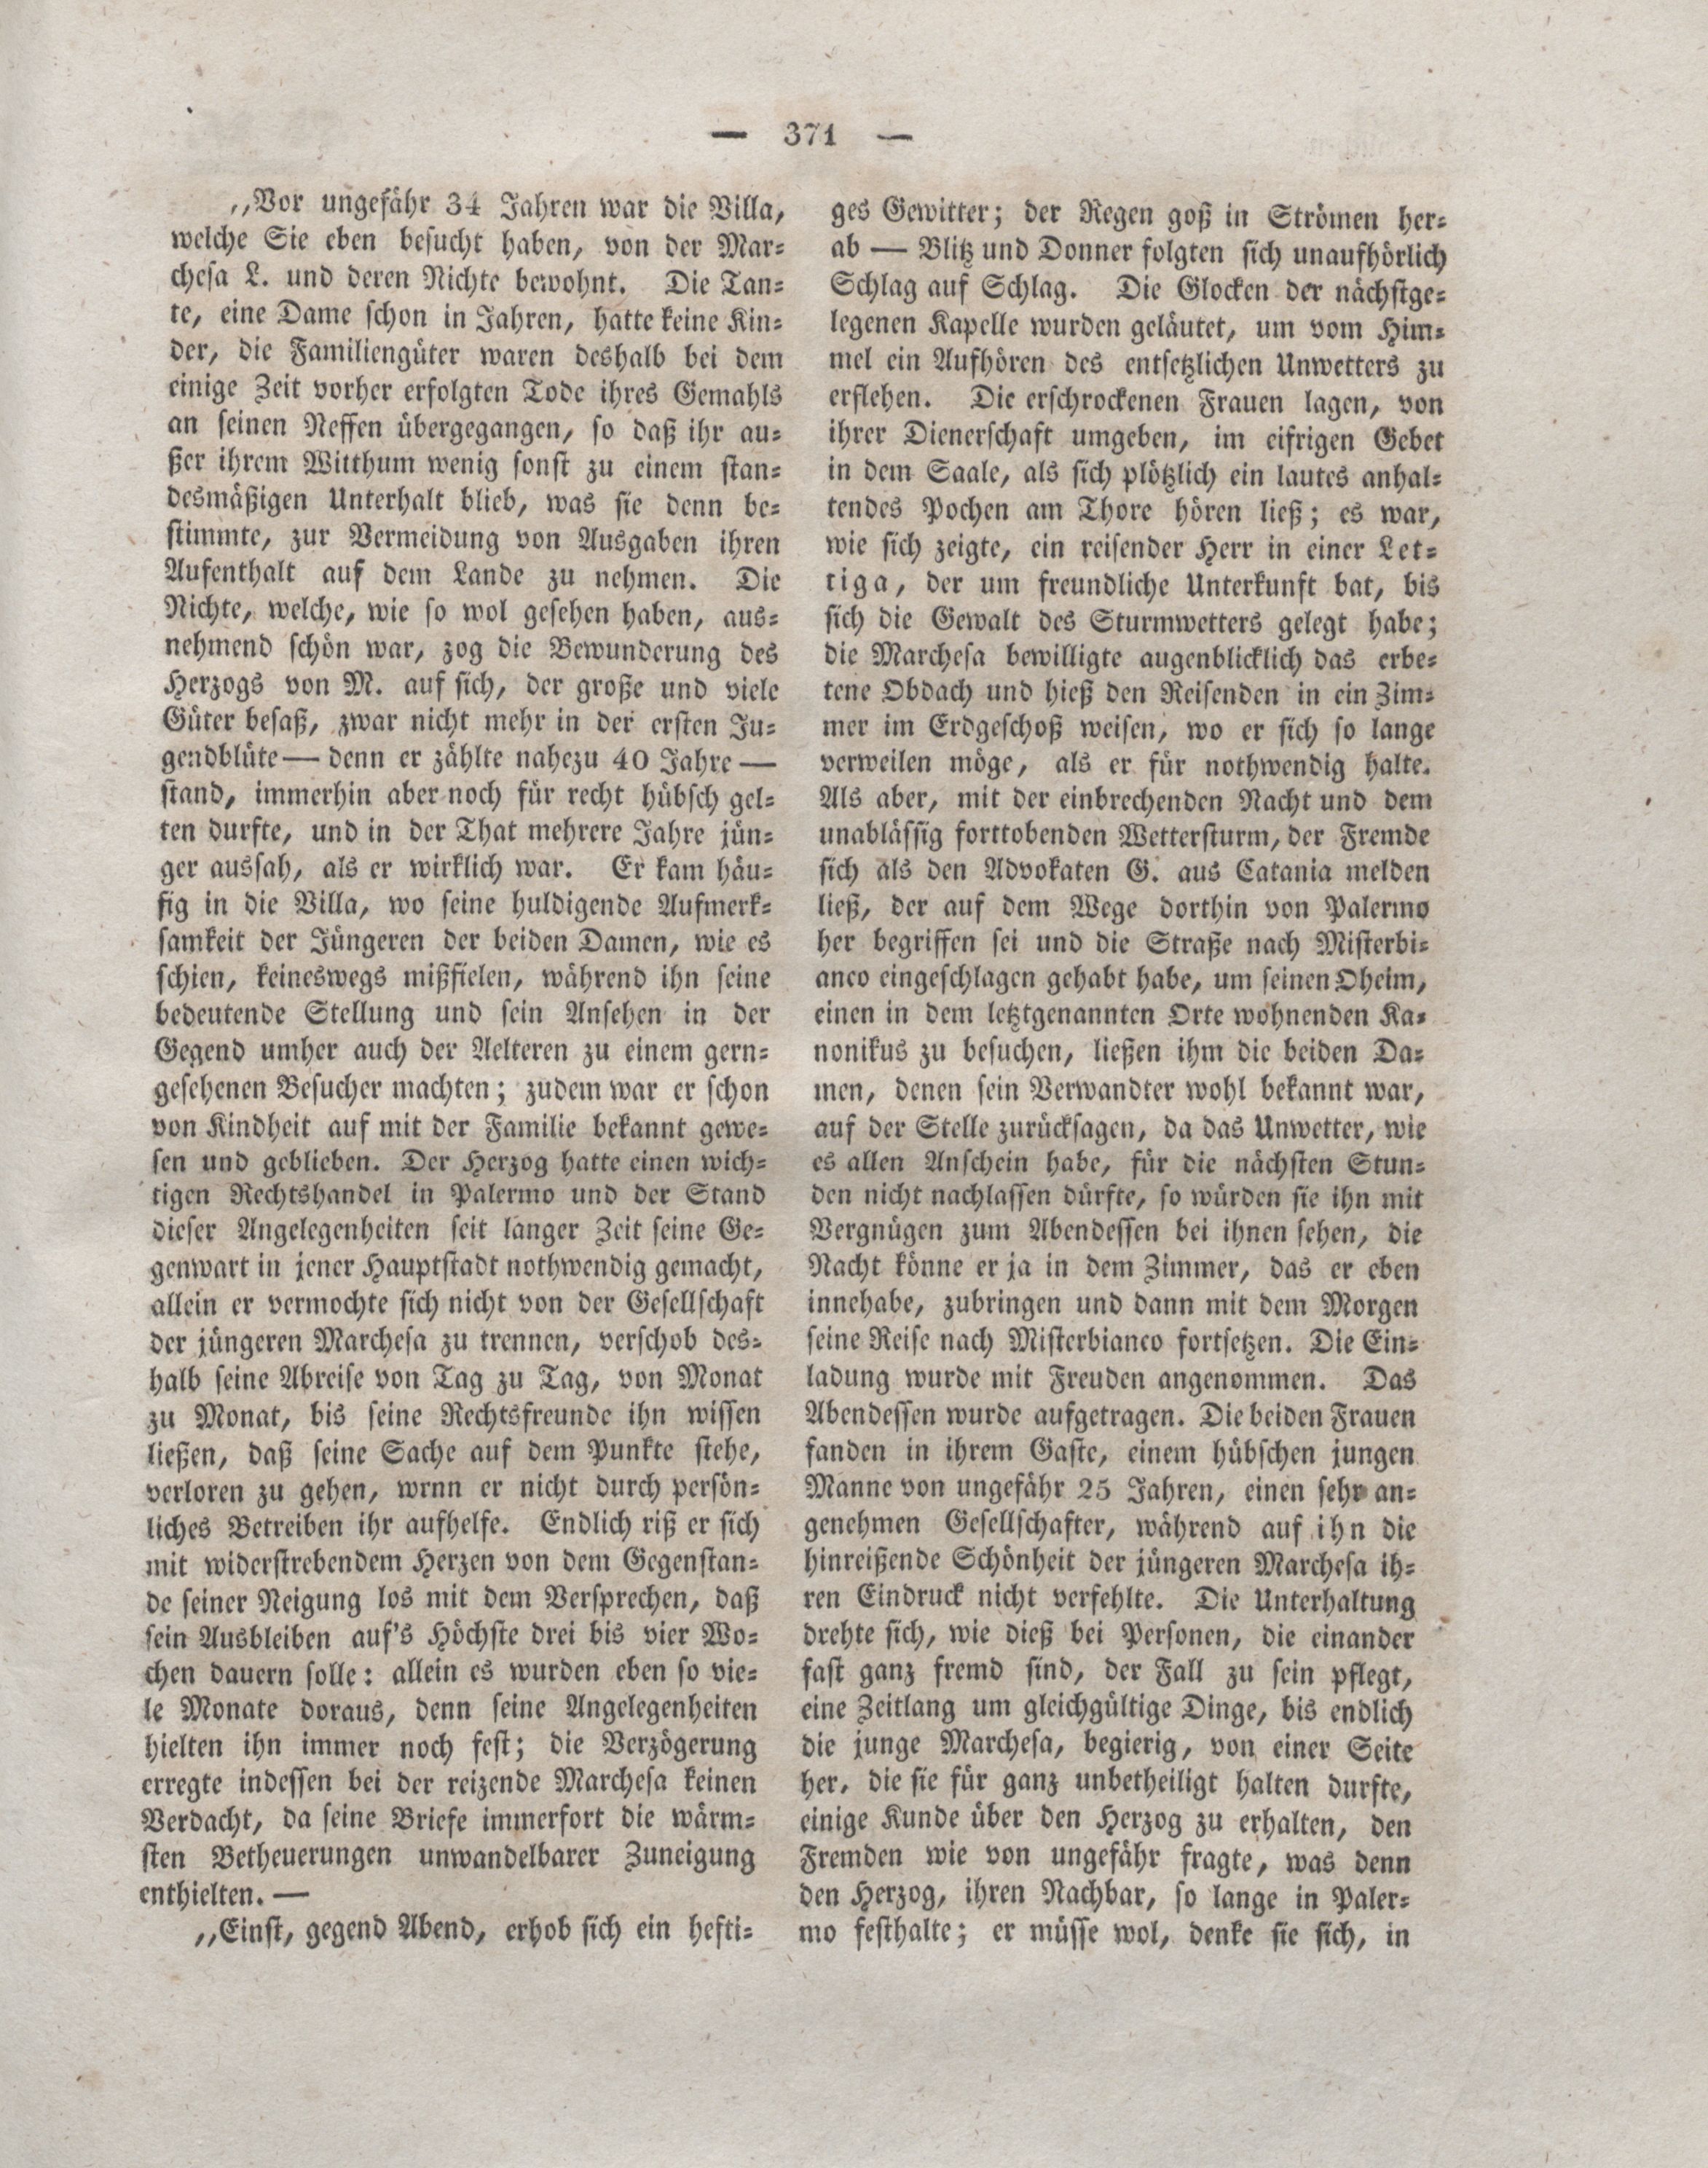 Der Refraktor [1837] (1837) | 87. (371) Haupttext